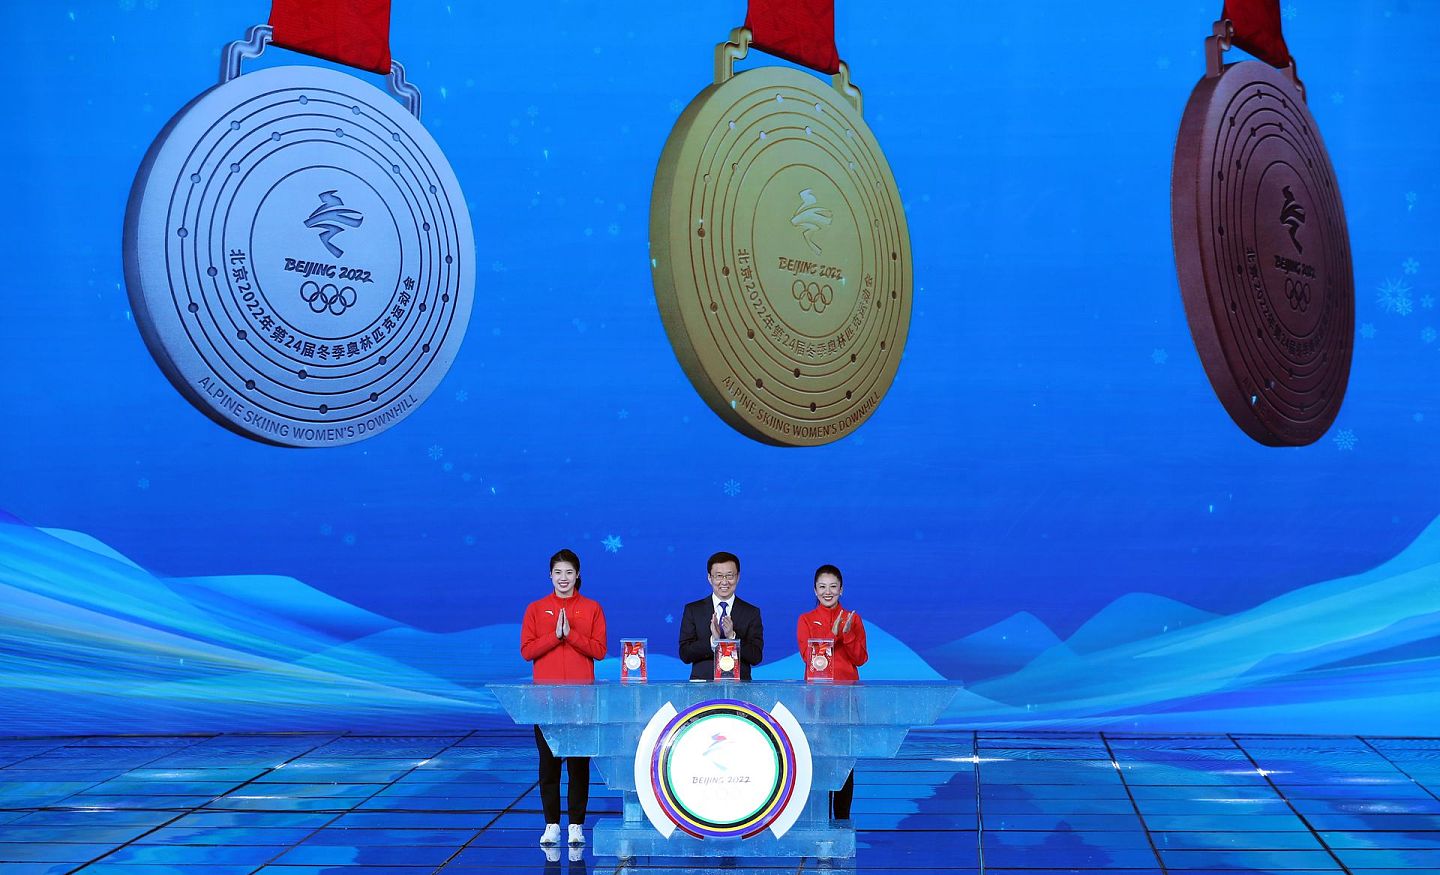 2021年10月26日，北京2022年冬奥会开幕倒计时100天主题活动在北京隆重举行。中共中央政治局常委、中国国务院副总理、第24届冬奥会工作领导小组组长韩正出席活动，并发布北京冬奥会奖牌“同心”。（新华社）